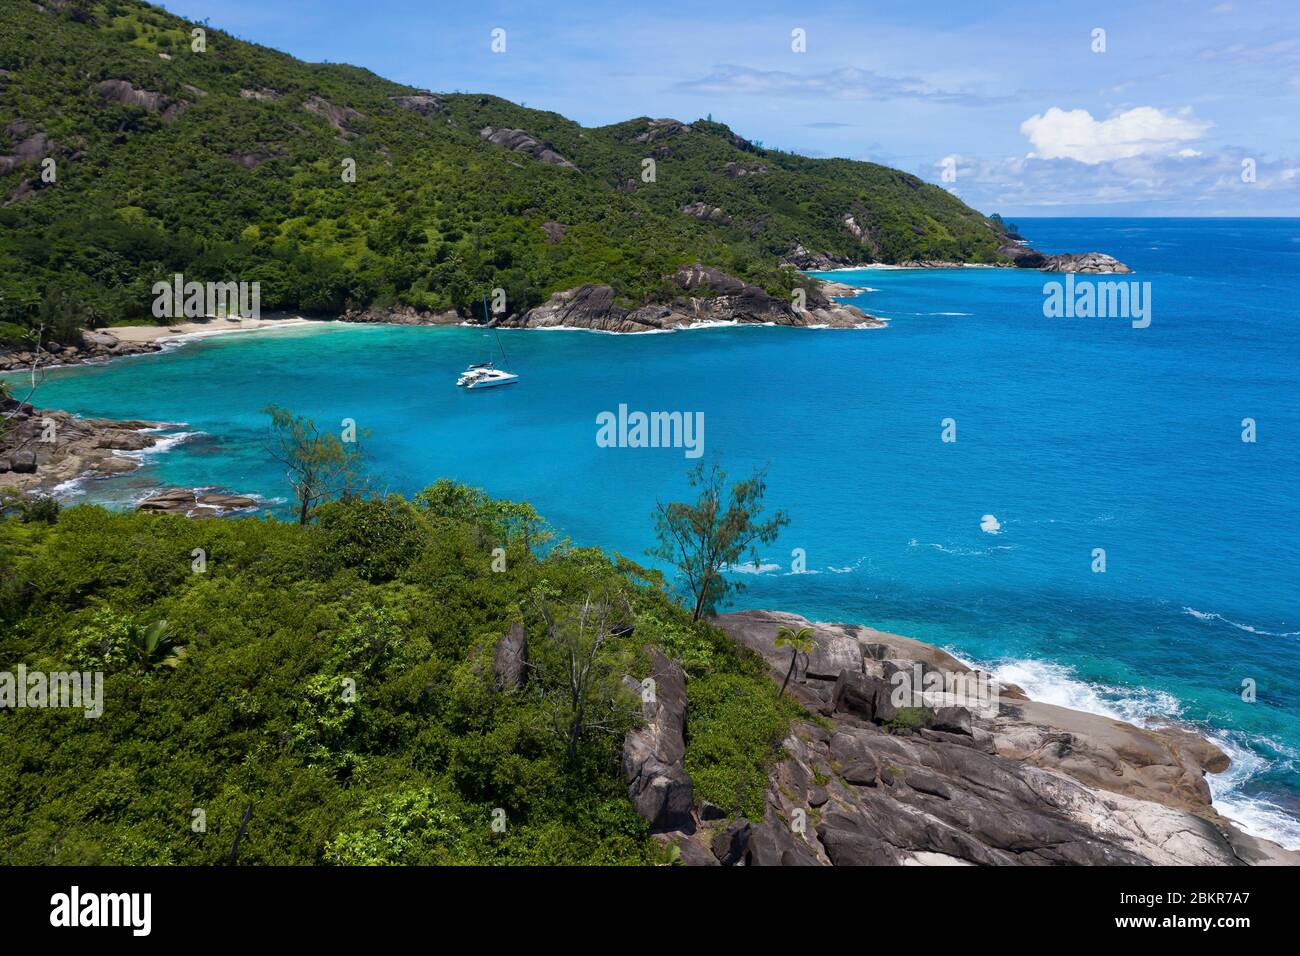 Seychelles, Mah? island, Anse Major (aerial view) Stock Photo